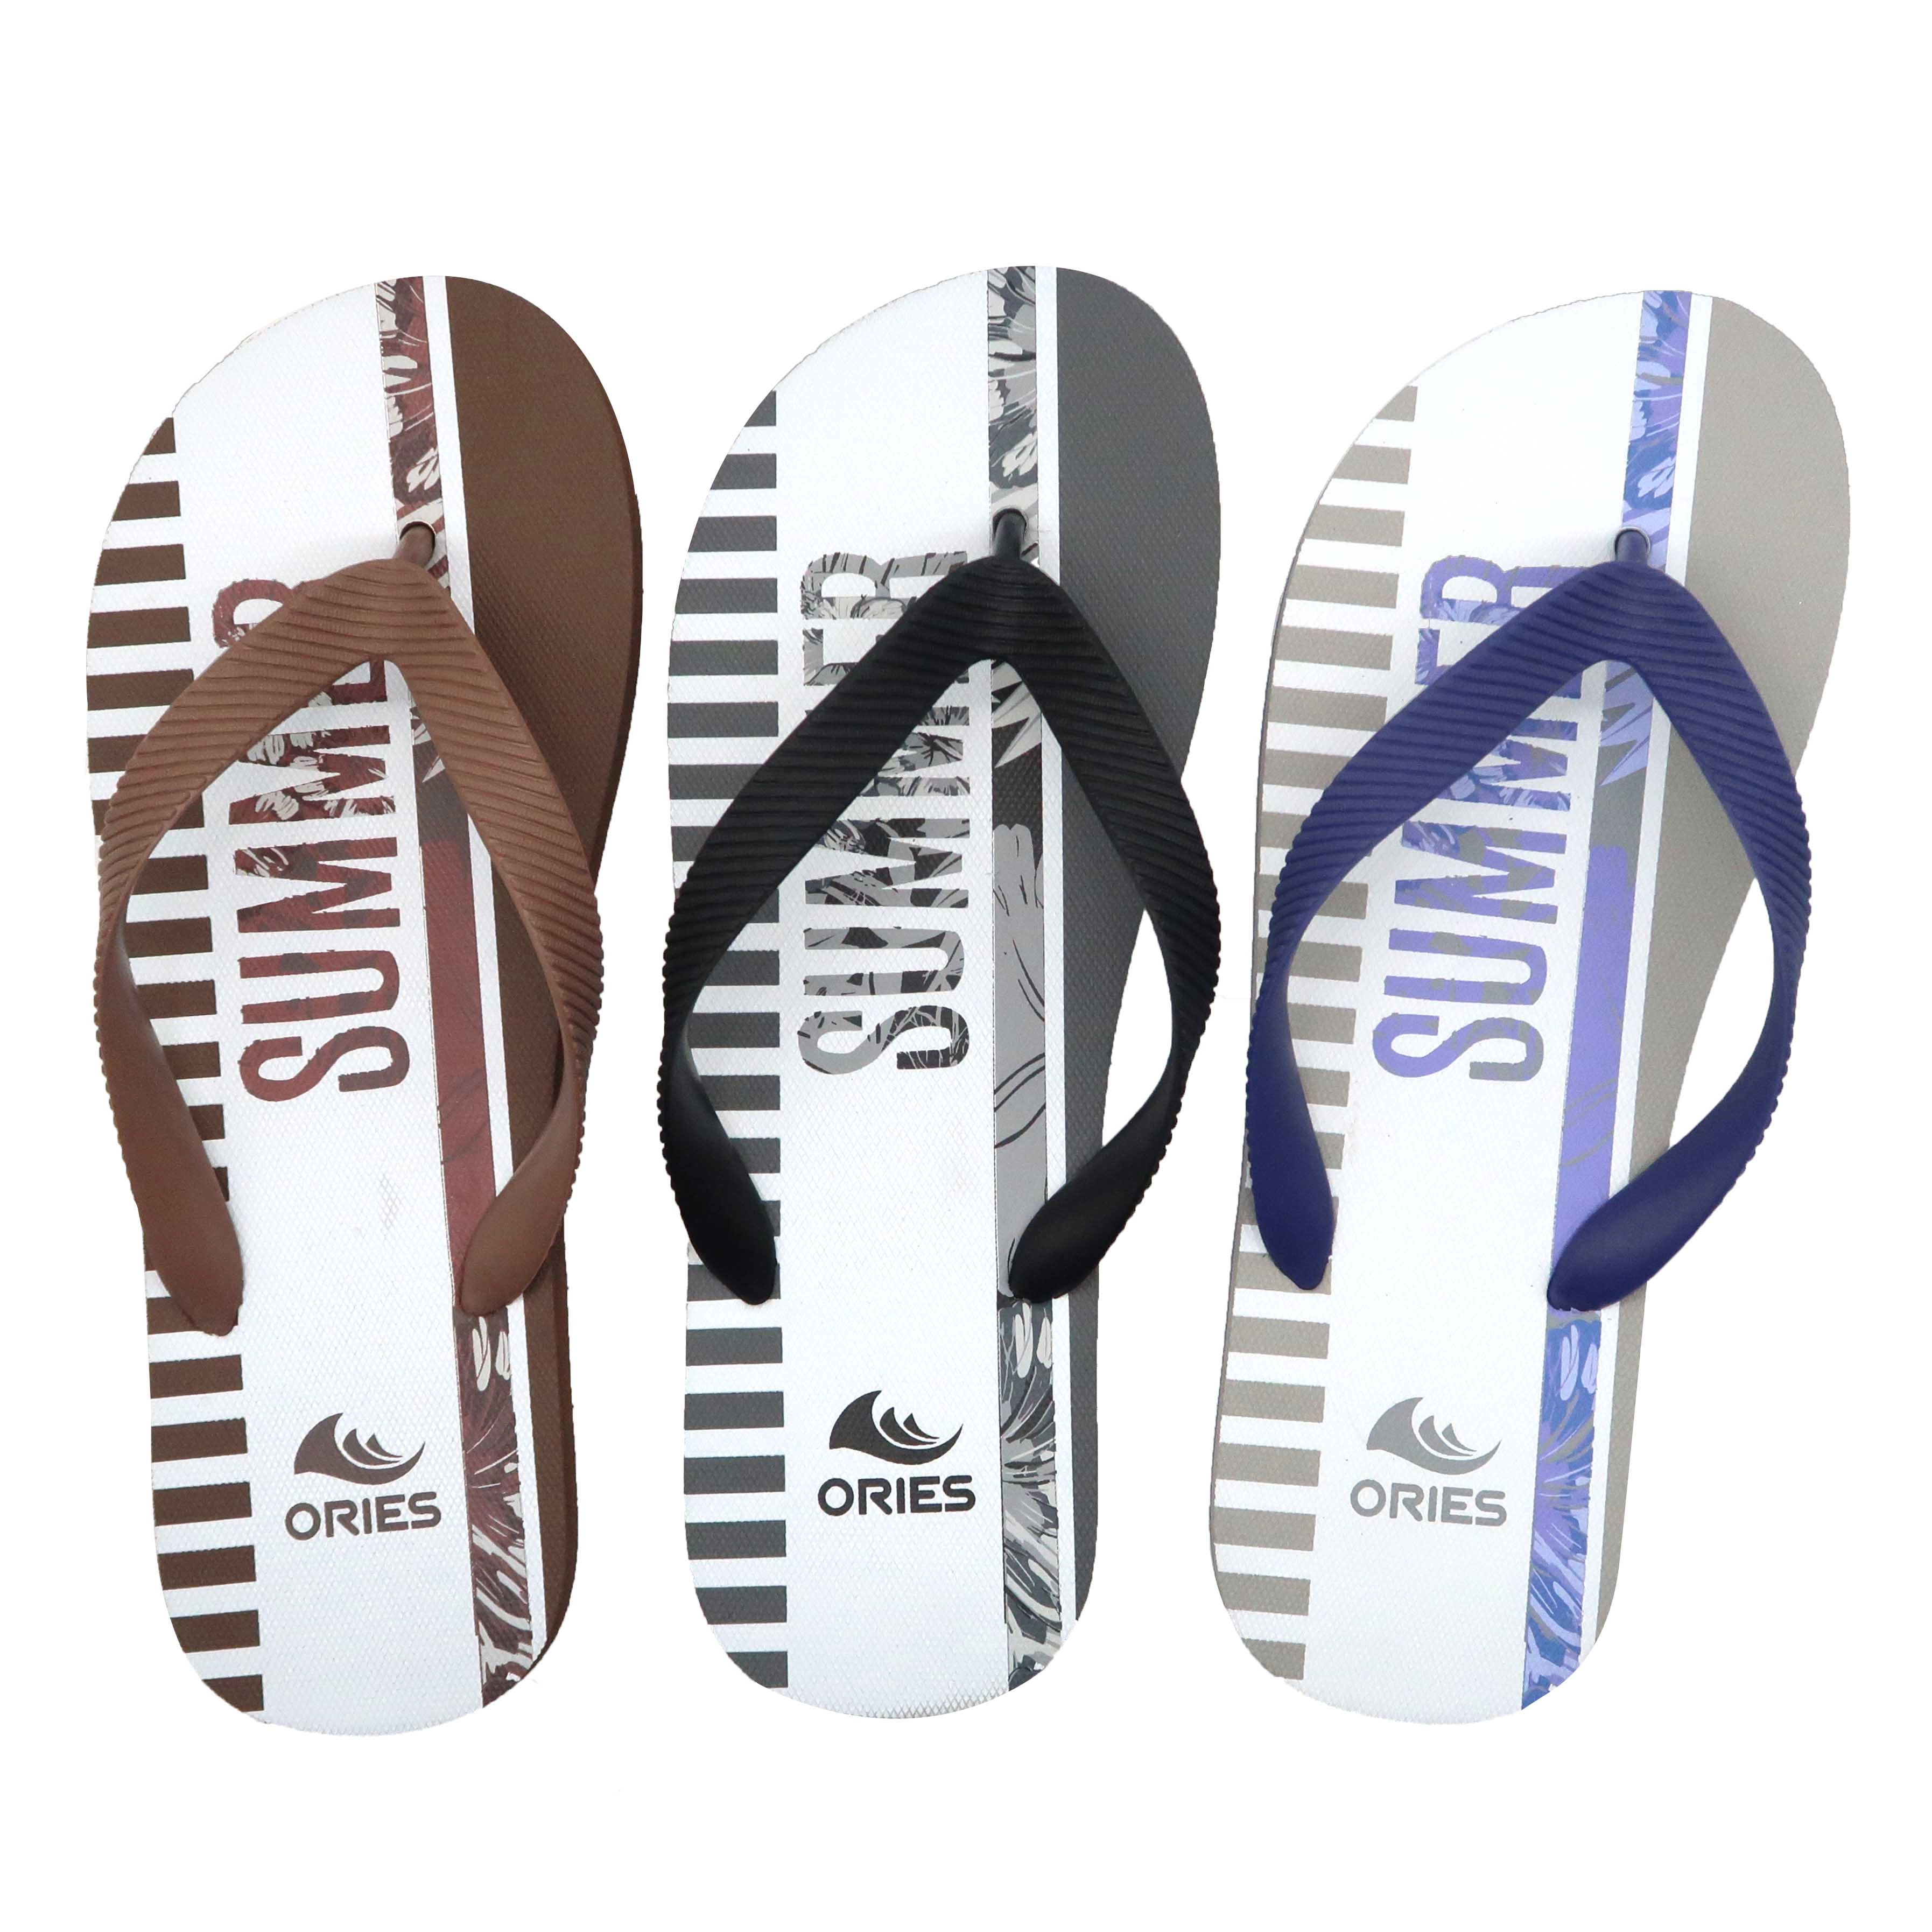 Populaire nieuwe ontwerp korting duurzame effen paarse kleur heren goedkope grote maat strand rubberen flipflop sandaal met logo